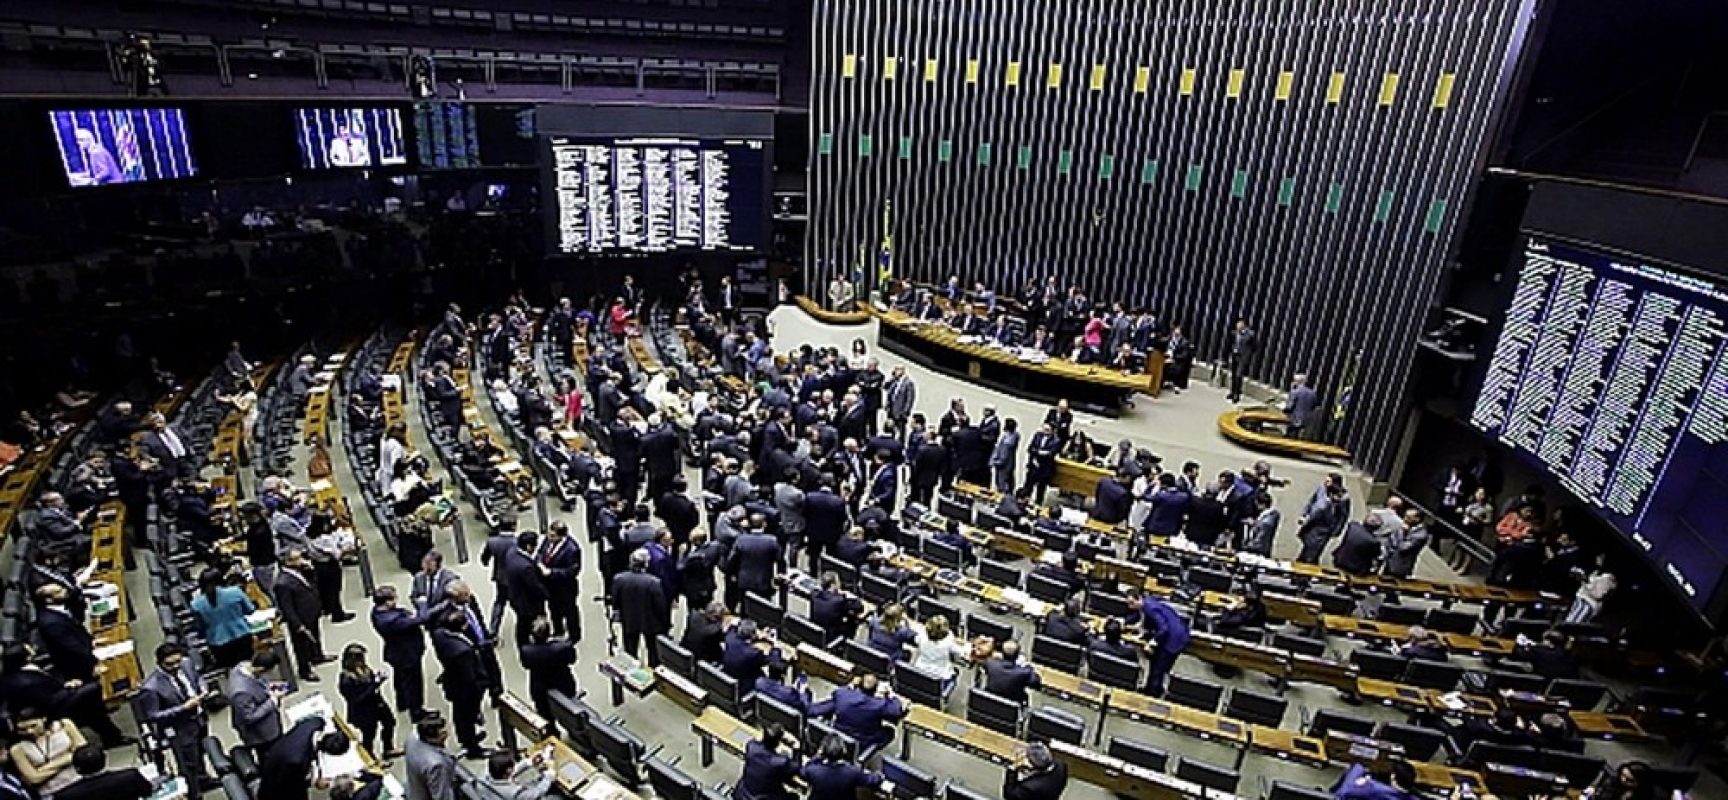 Eleições: Confira a lista dos 39 deputados federais eleitos pela Bahia